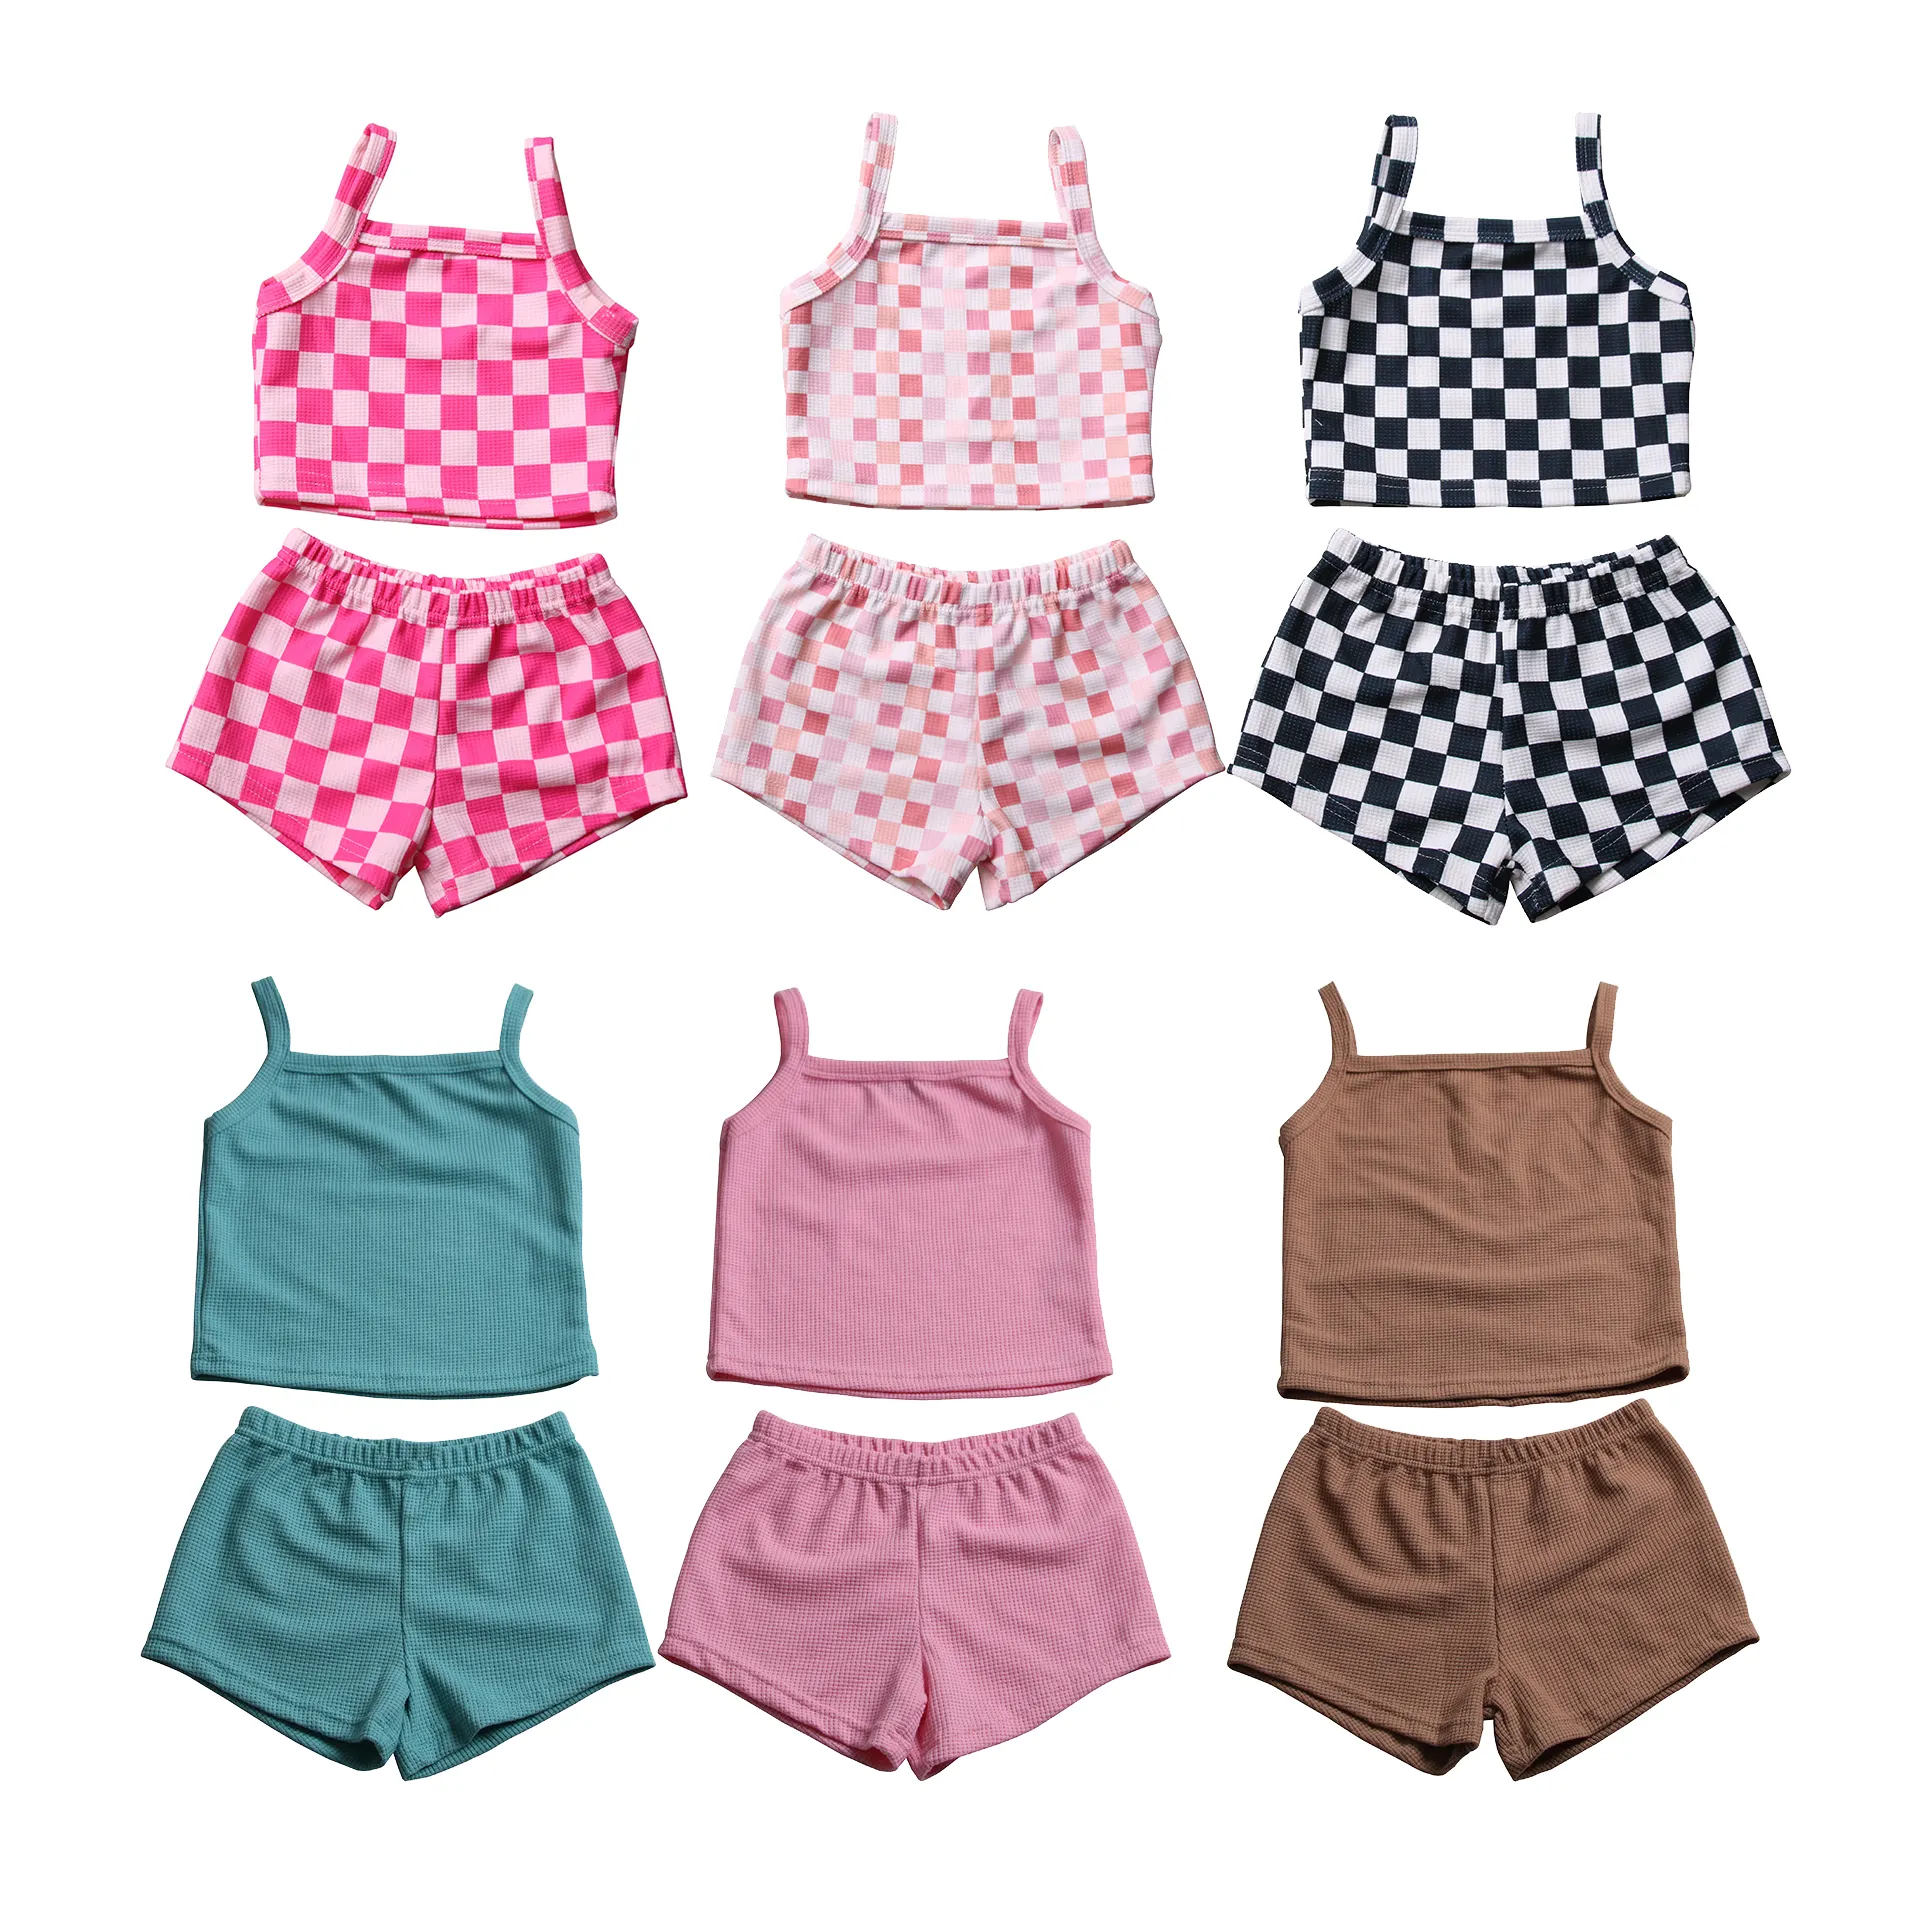 Conjuntos de ropa de verano para bebé de algodón gofres al por mayor, conjunto de ropa de salón para niños, ropa de niño niña personalizada, ropa de bebé